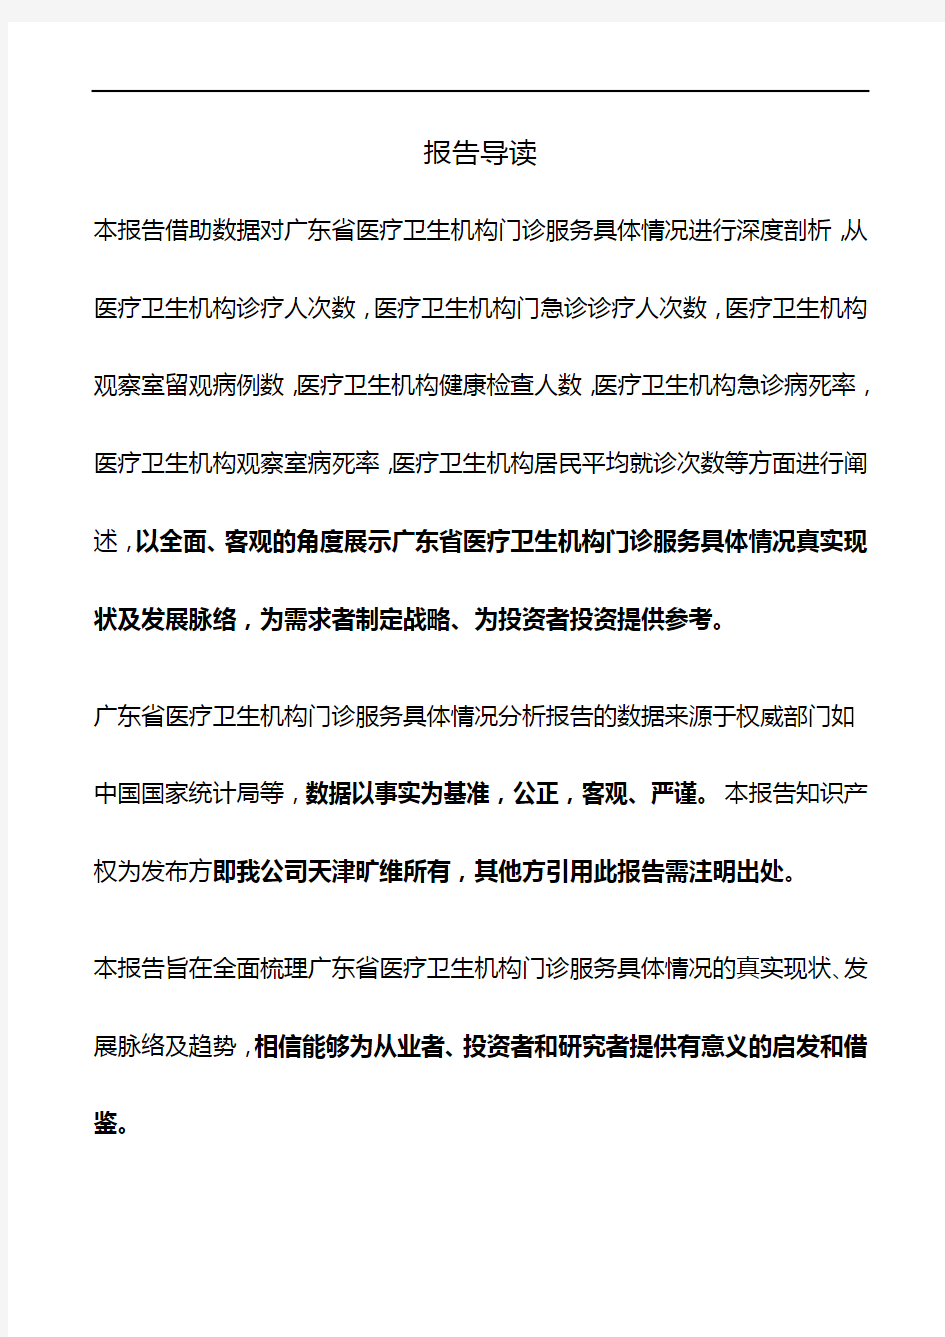 广东省医疗卫生机构门诊服务具体情况3年数据分析报告2019版